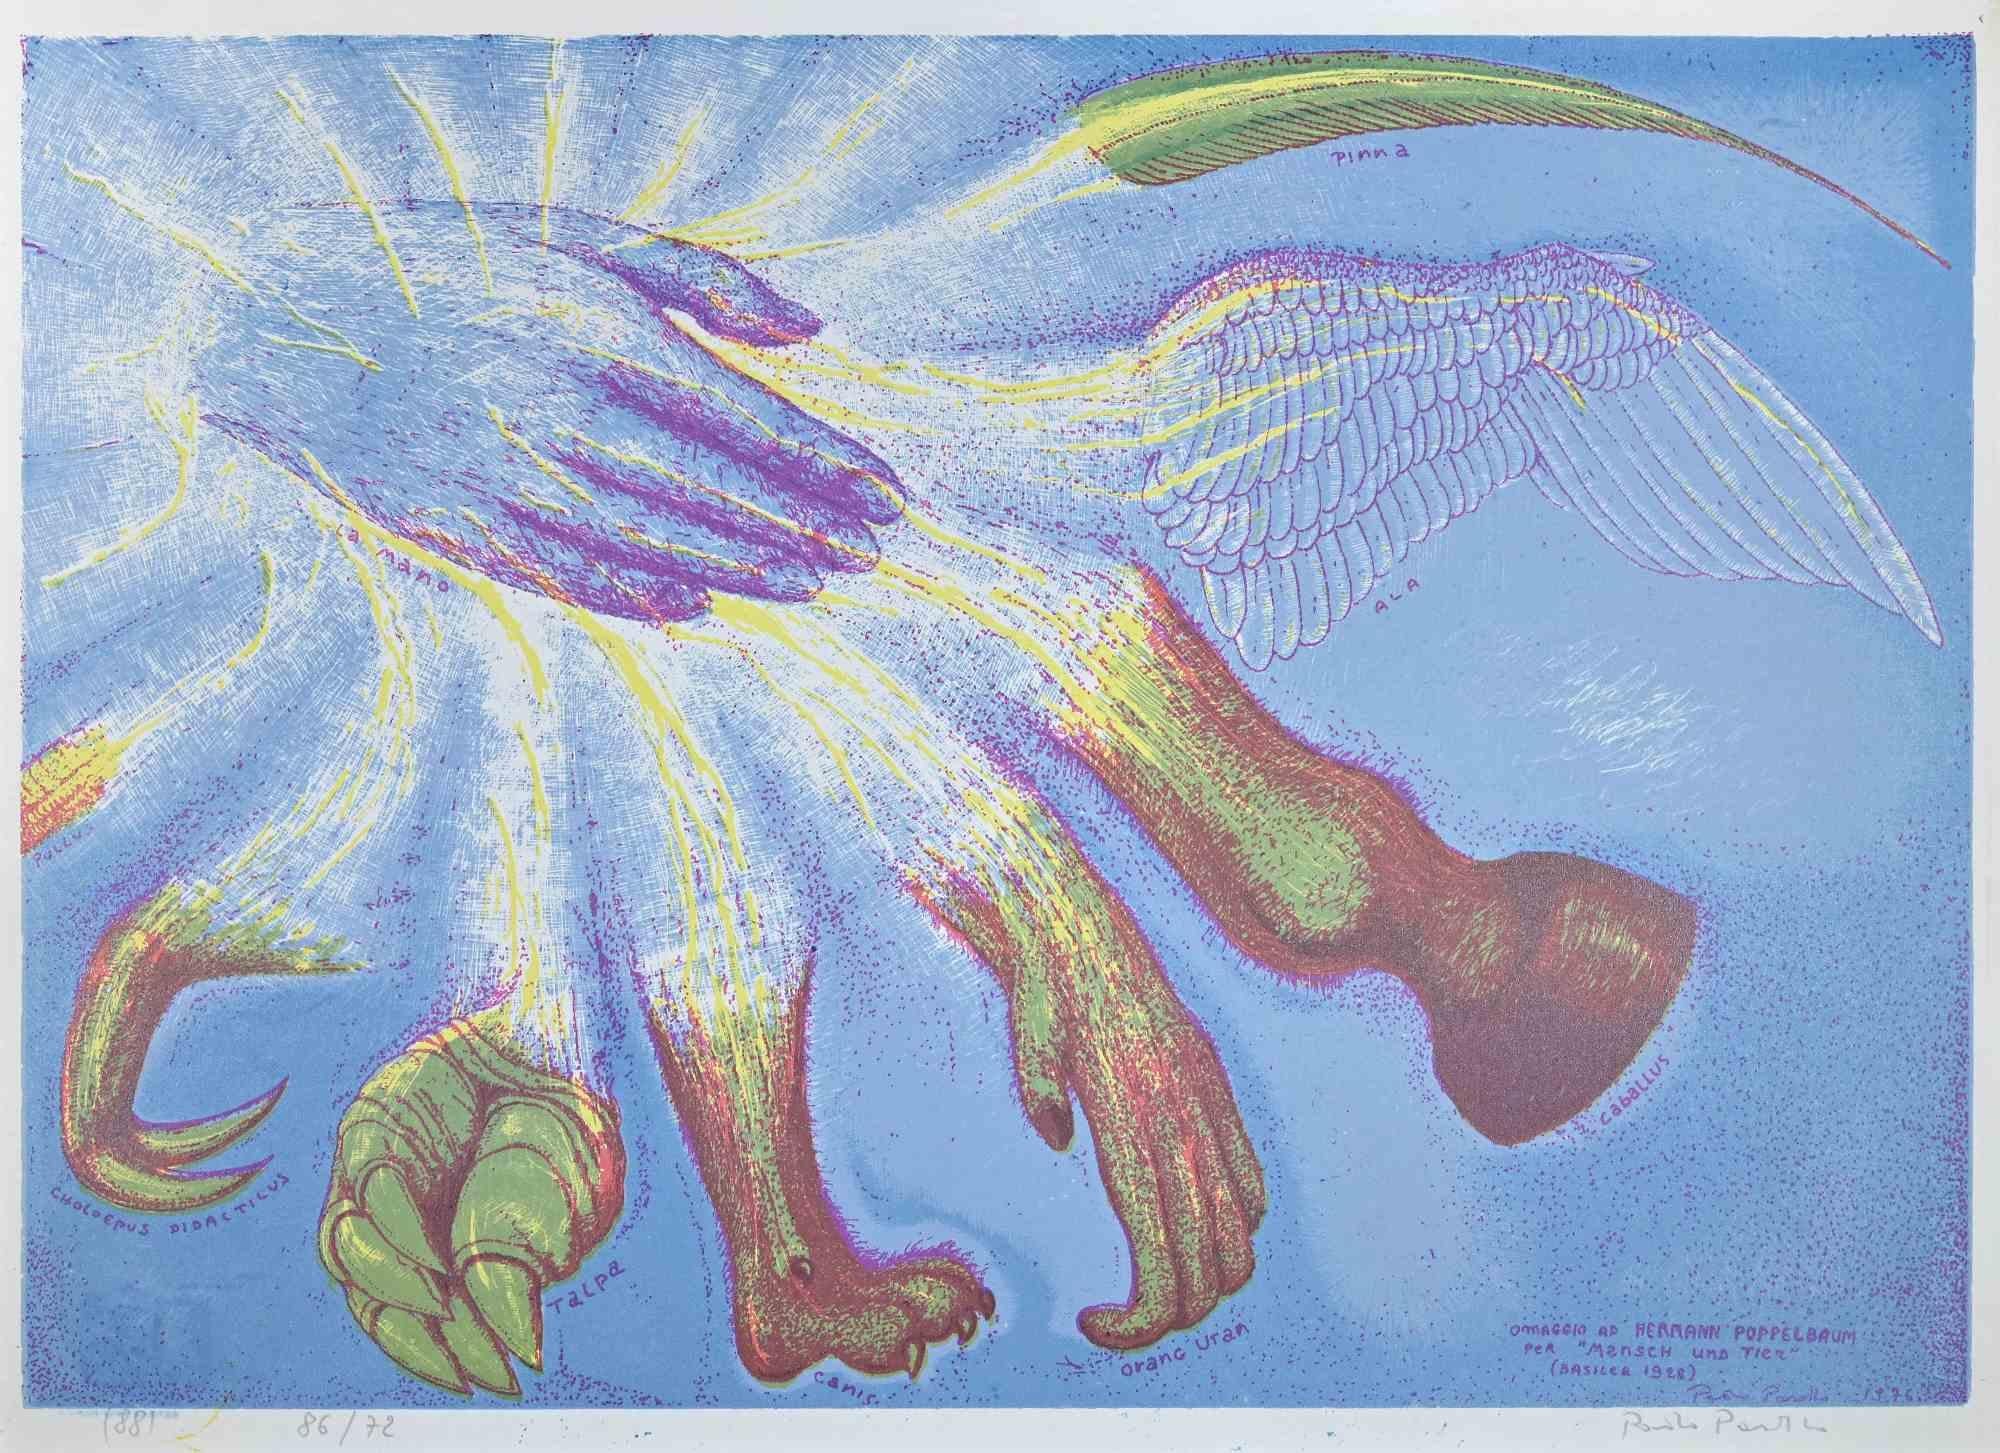 Hommage an Hermann Poppelbaum - Original Siebdruck von Paolo Pasotto - 1976